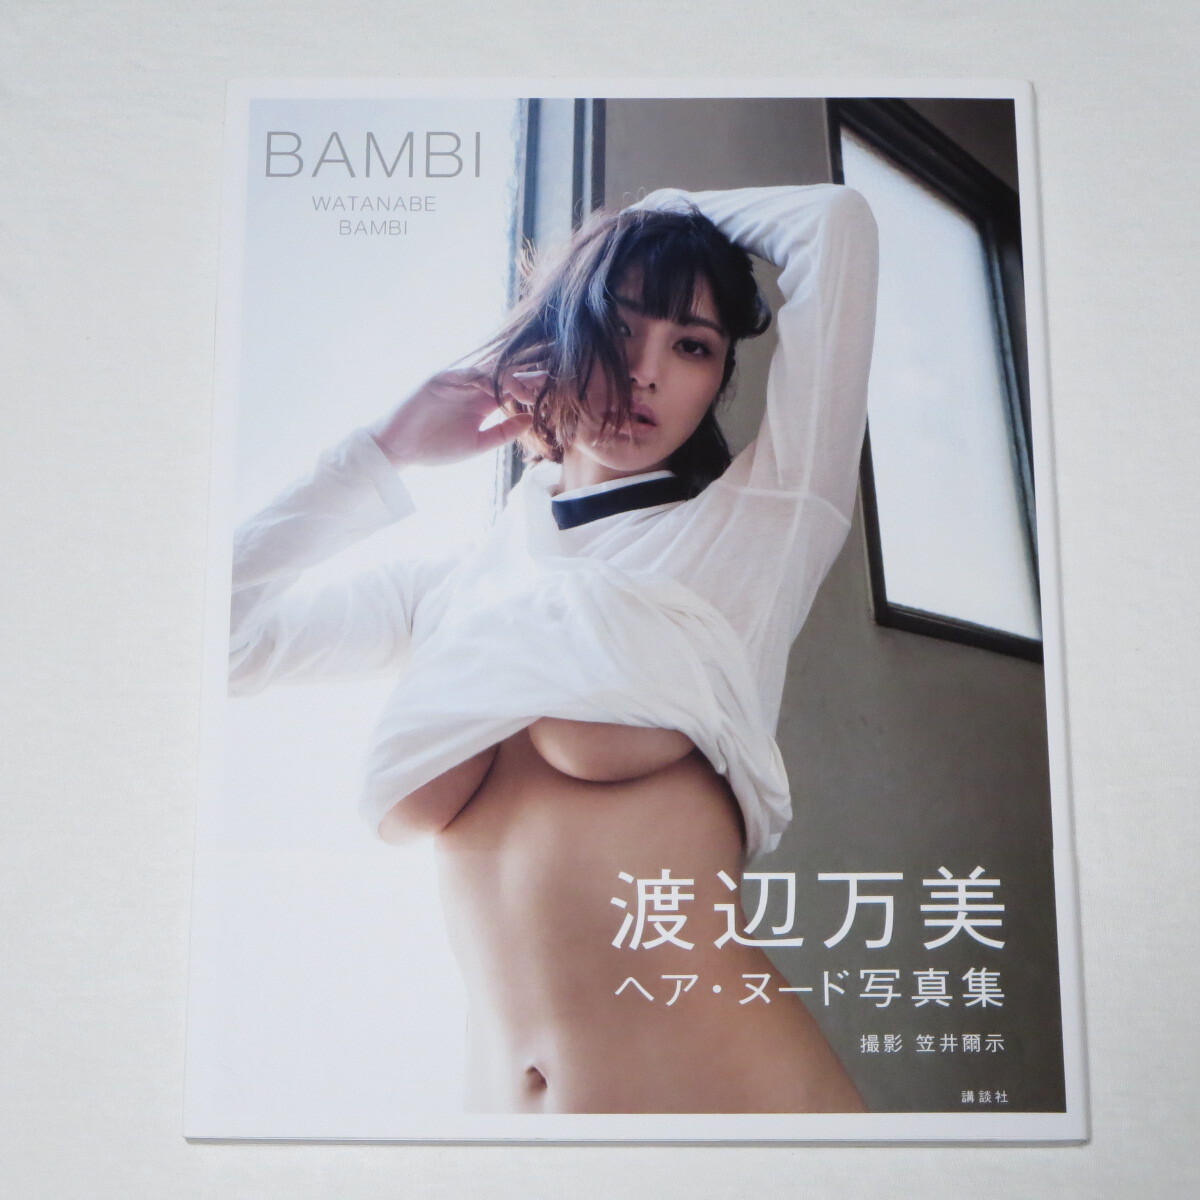 ● Книга первого издания ♪ ● С OBI ● Фото книга Мани Ватанабе "Бамби"